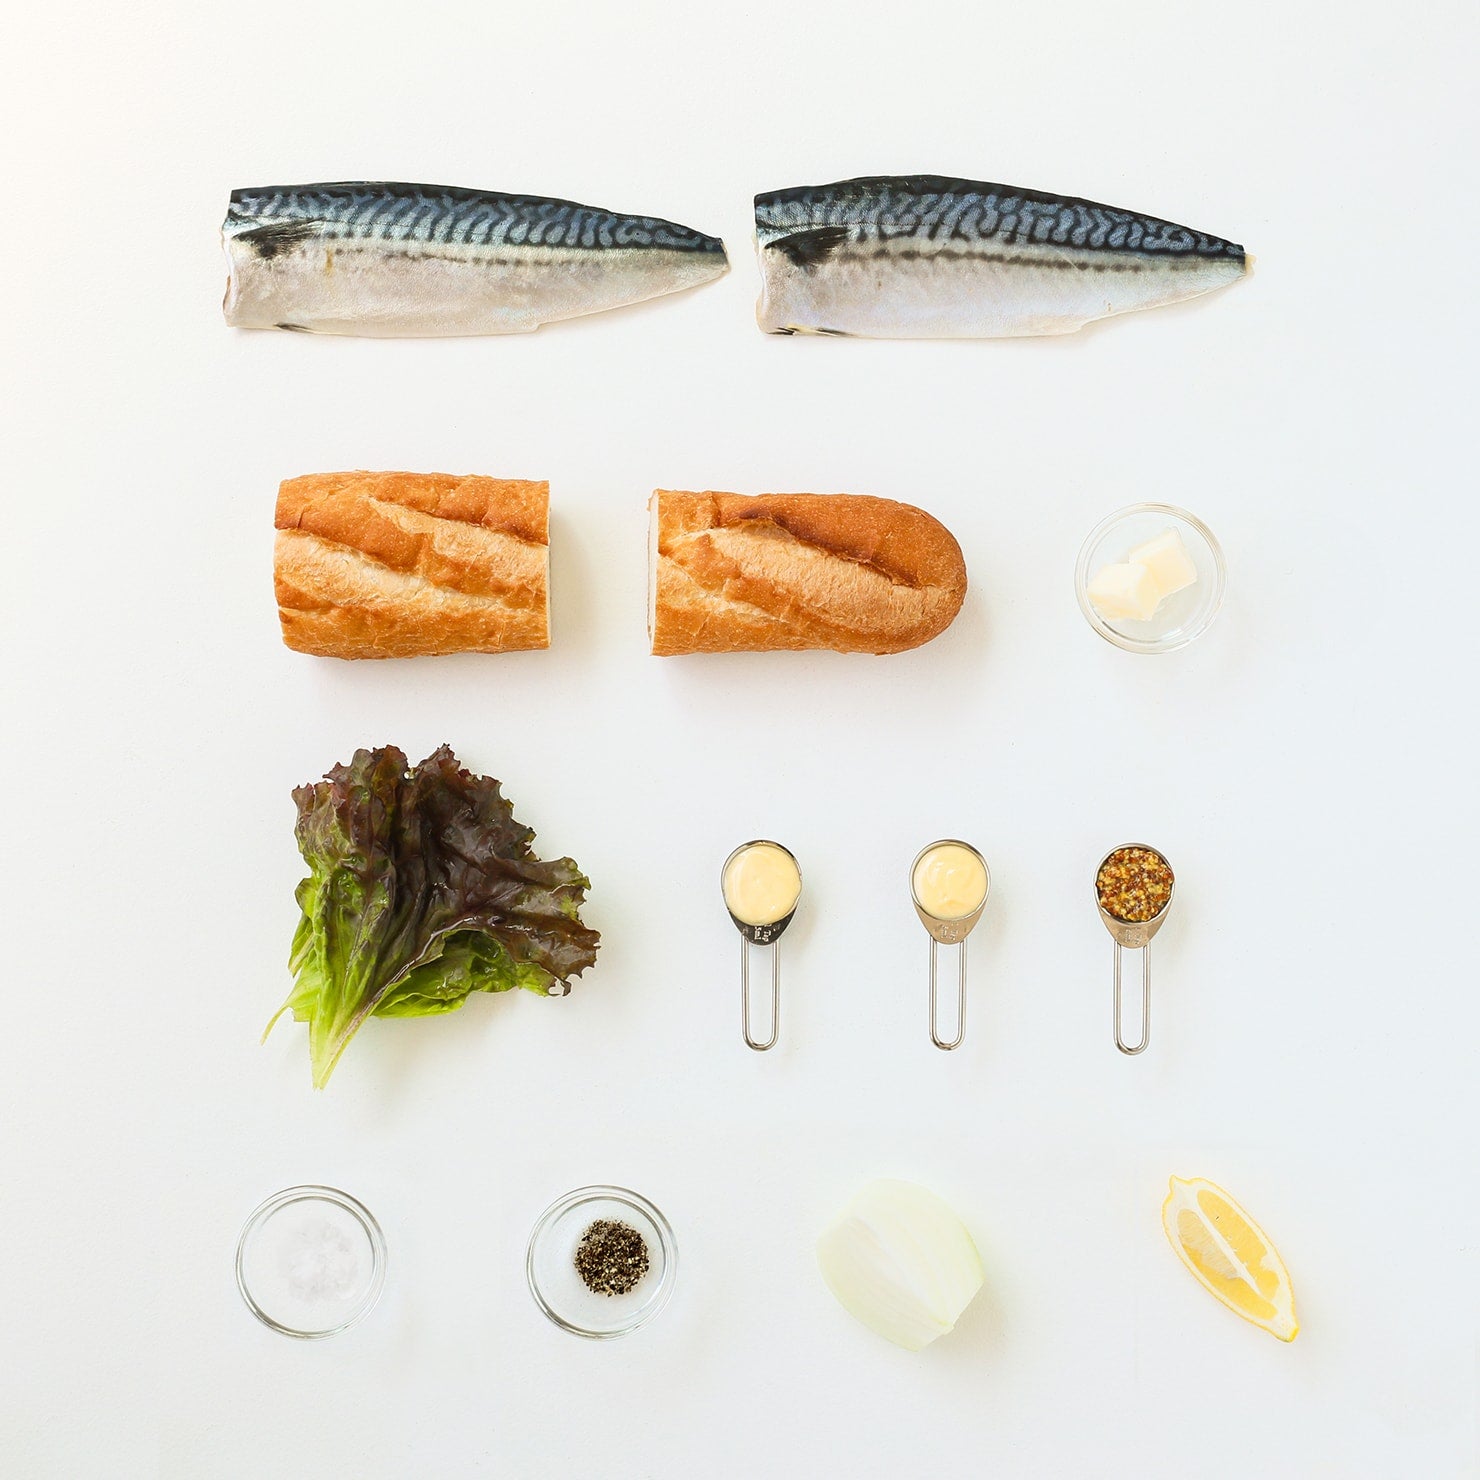 Mediterranean Mackerel Sandwich Ingredients